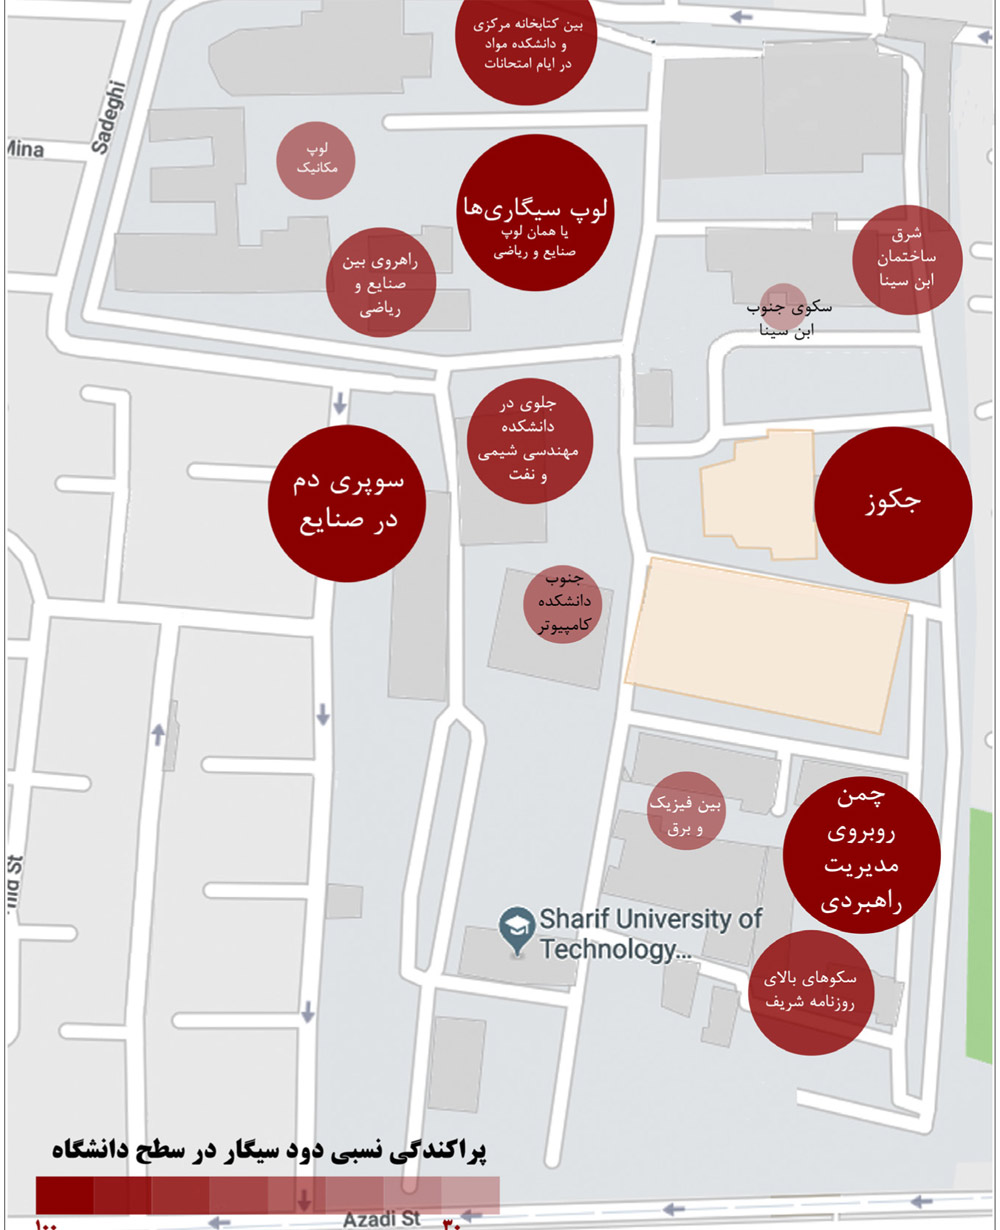 مناطق سیگار کشیدن در دانشگاه شریف